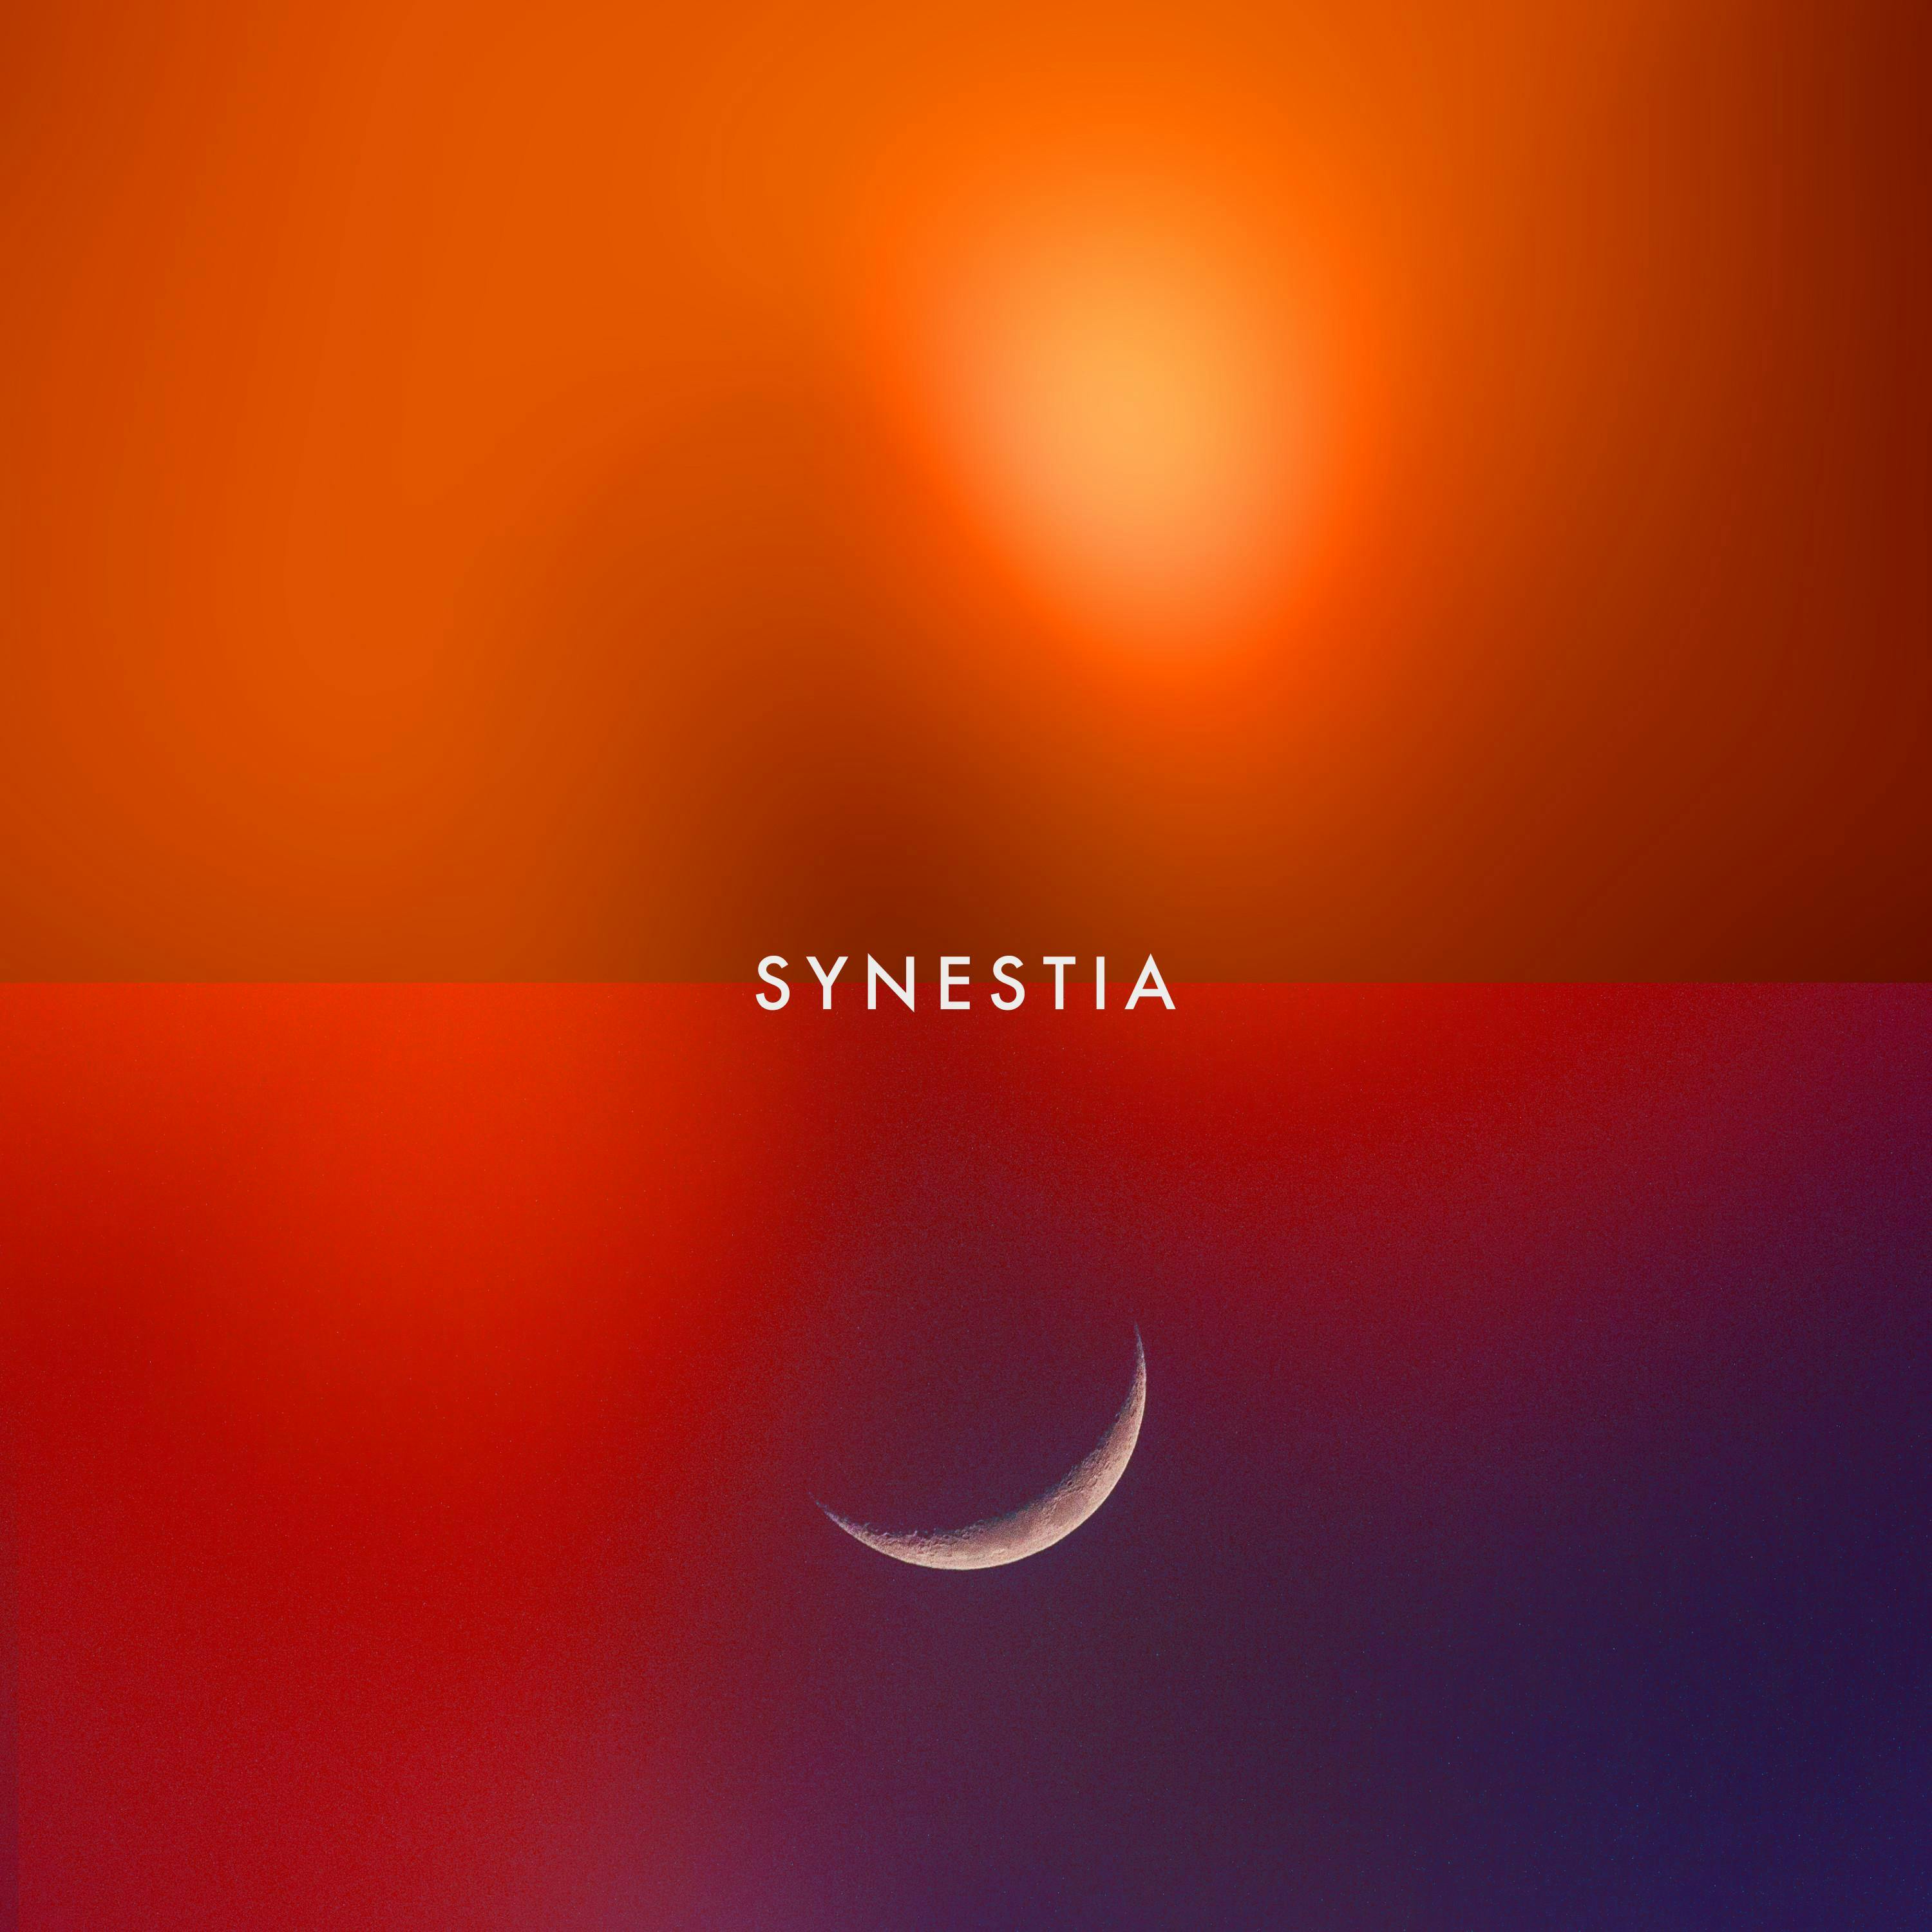 Synestia May 16, 2019